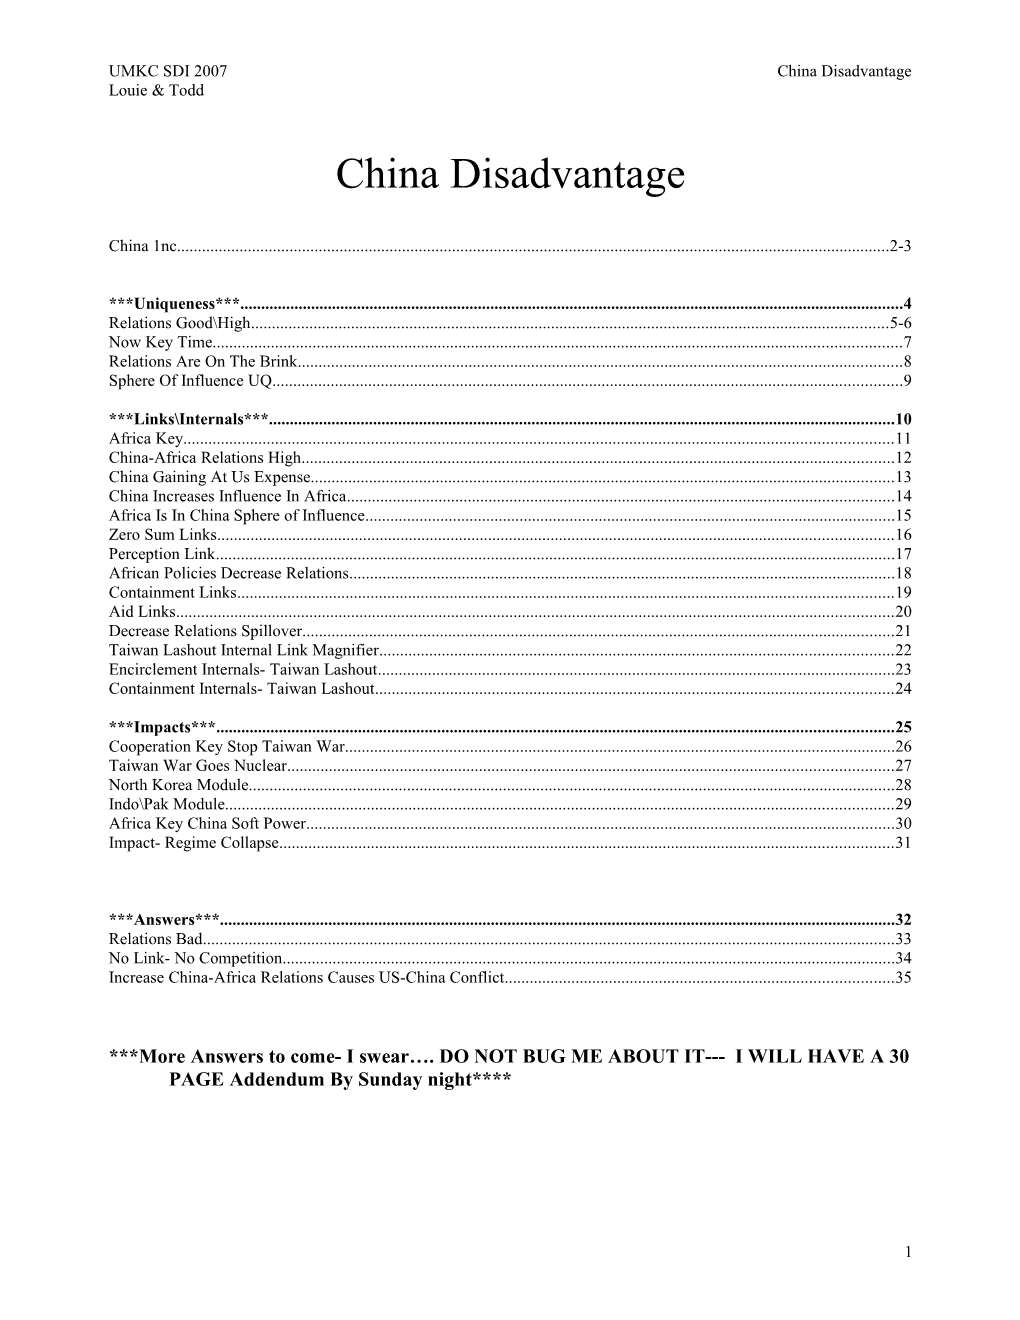 UMKC SDI 2007 China Disadvantage